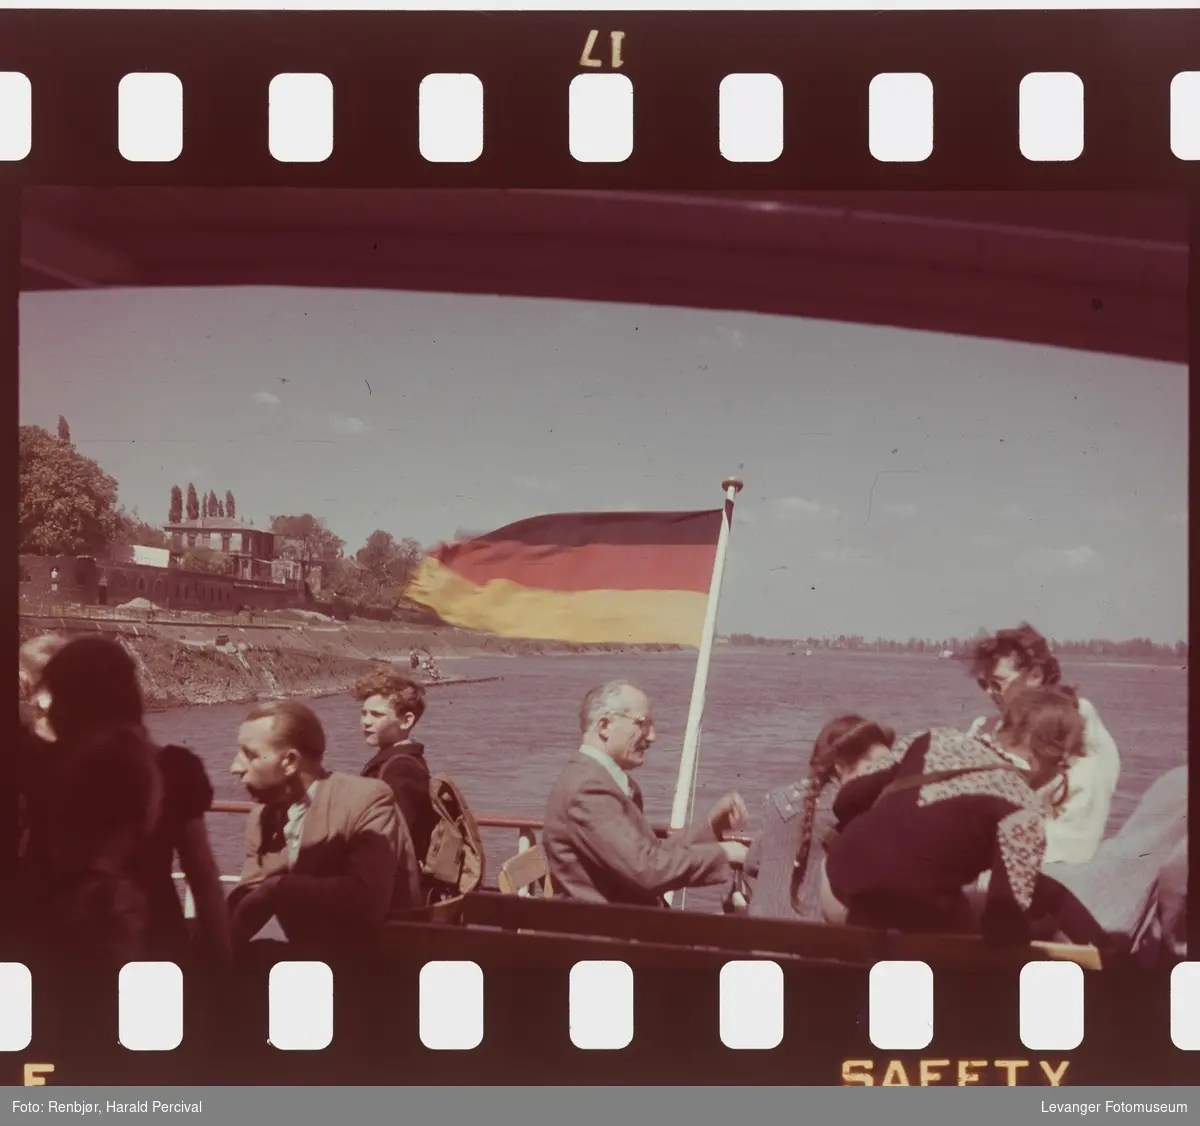 Fra Tyskland, i forbindelse med Renbjørs deltaking på den årlige Fotomessen i Køln. Fra båttur på Rhinen.